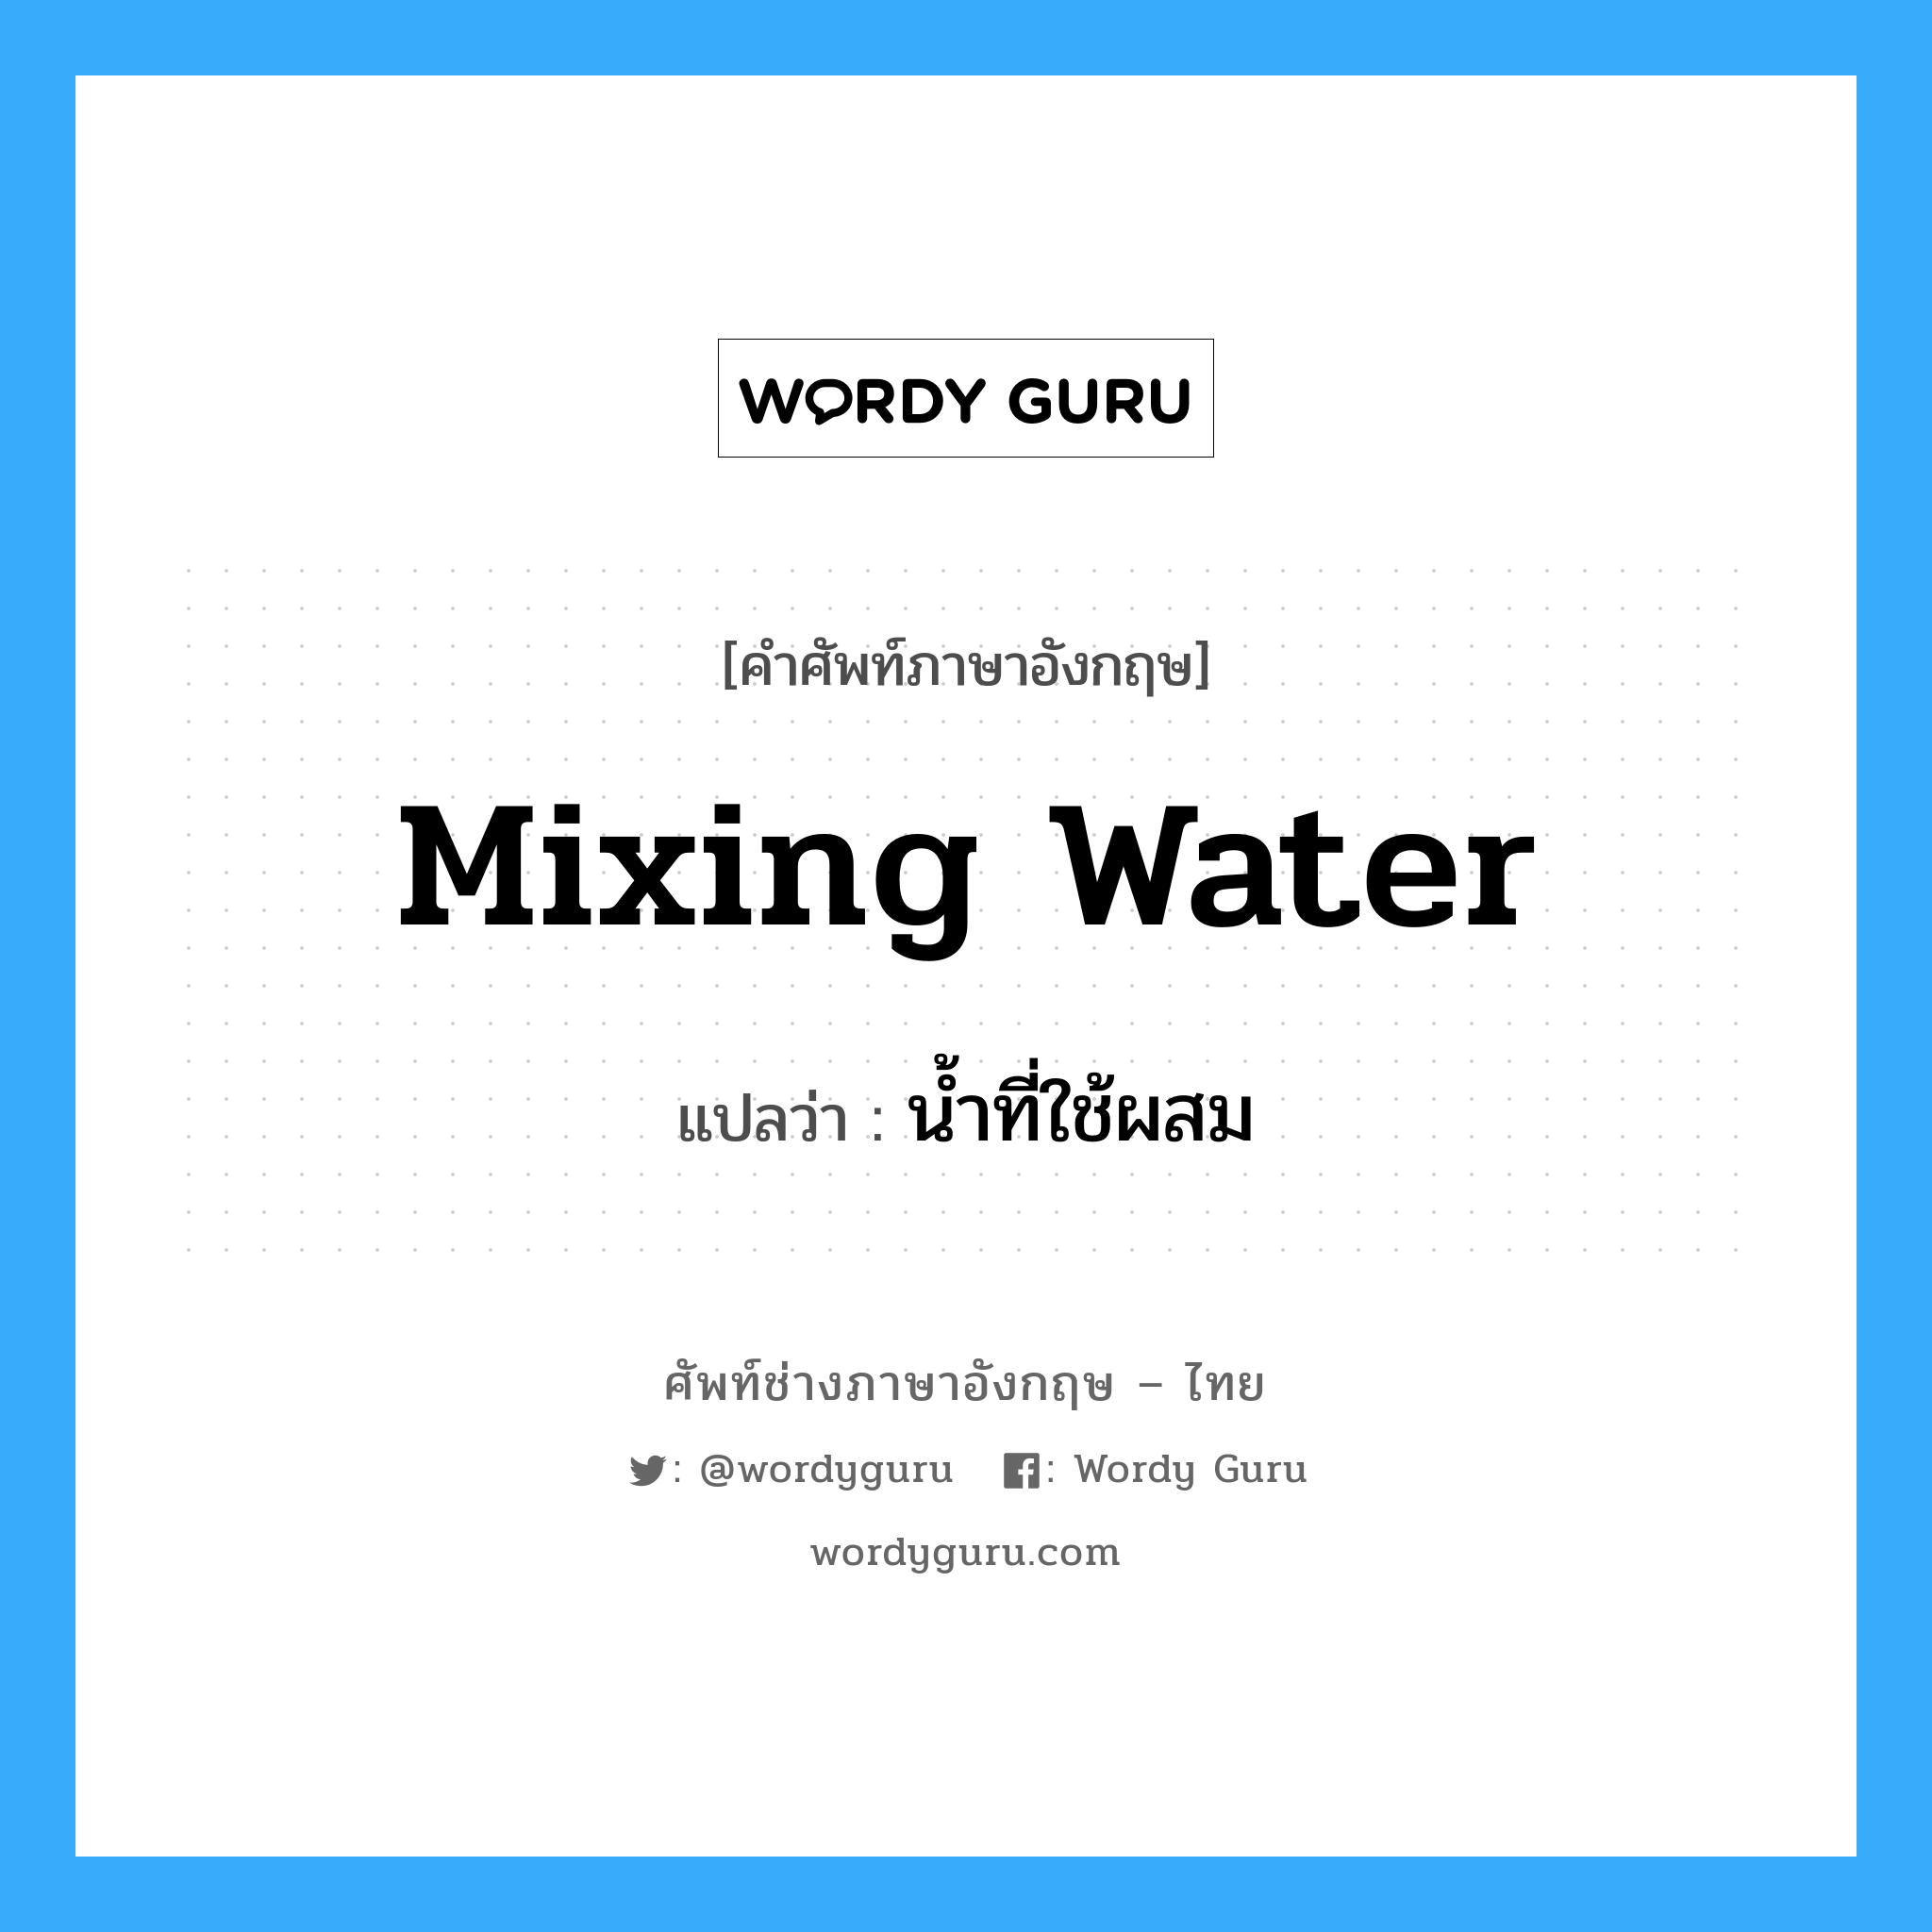 mixing water แปลว่า?, คำศัพท์ช่างภาษาอังกฤษ - ไทย mixing water คำศัพท์ภาษาอังกฤษ mixing water แปลว่า น้ำที่ใช้ผสม